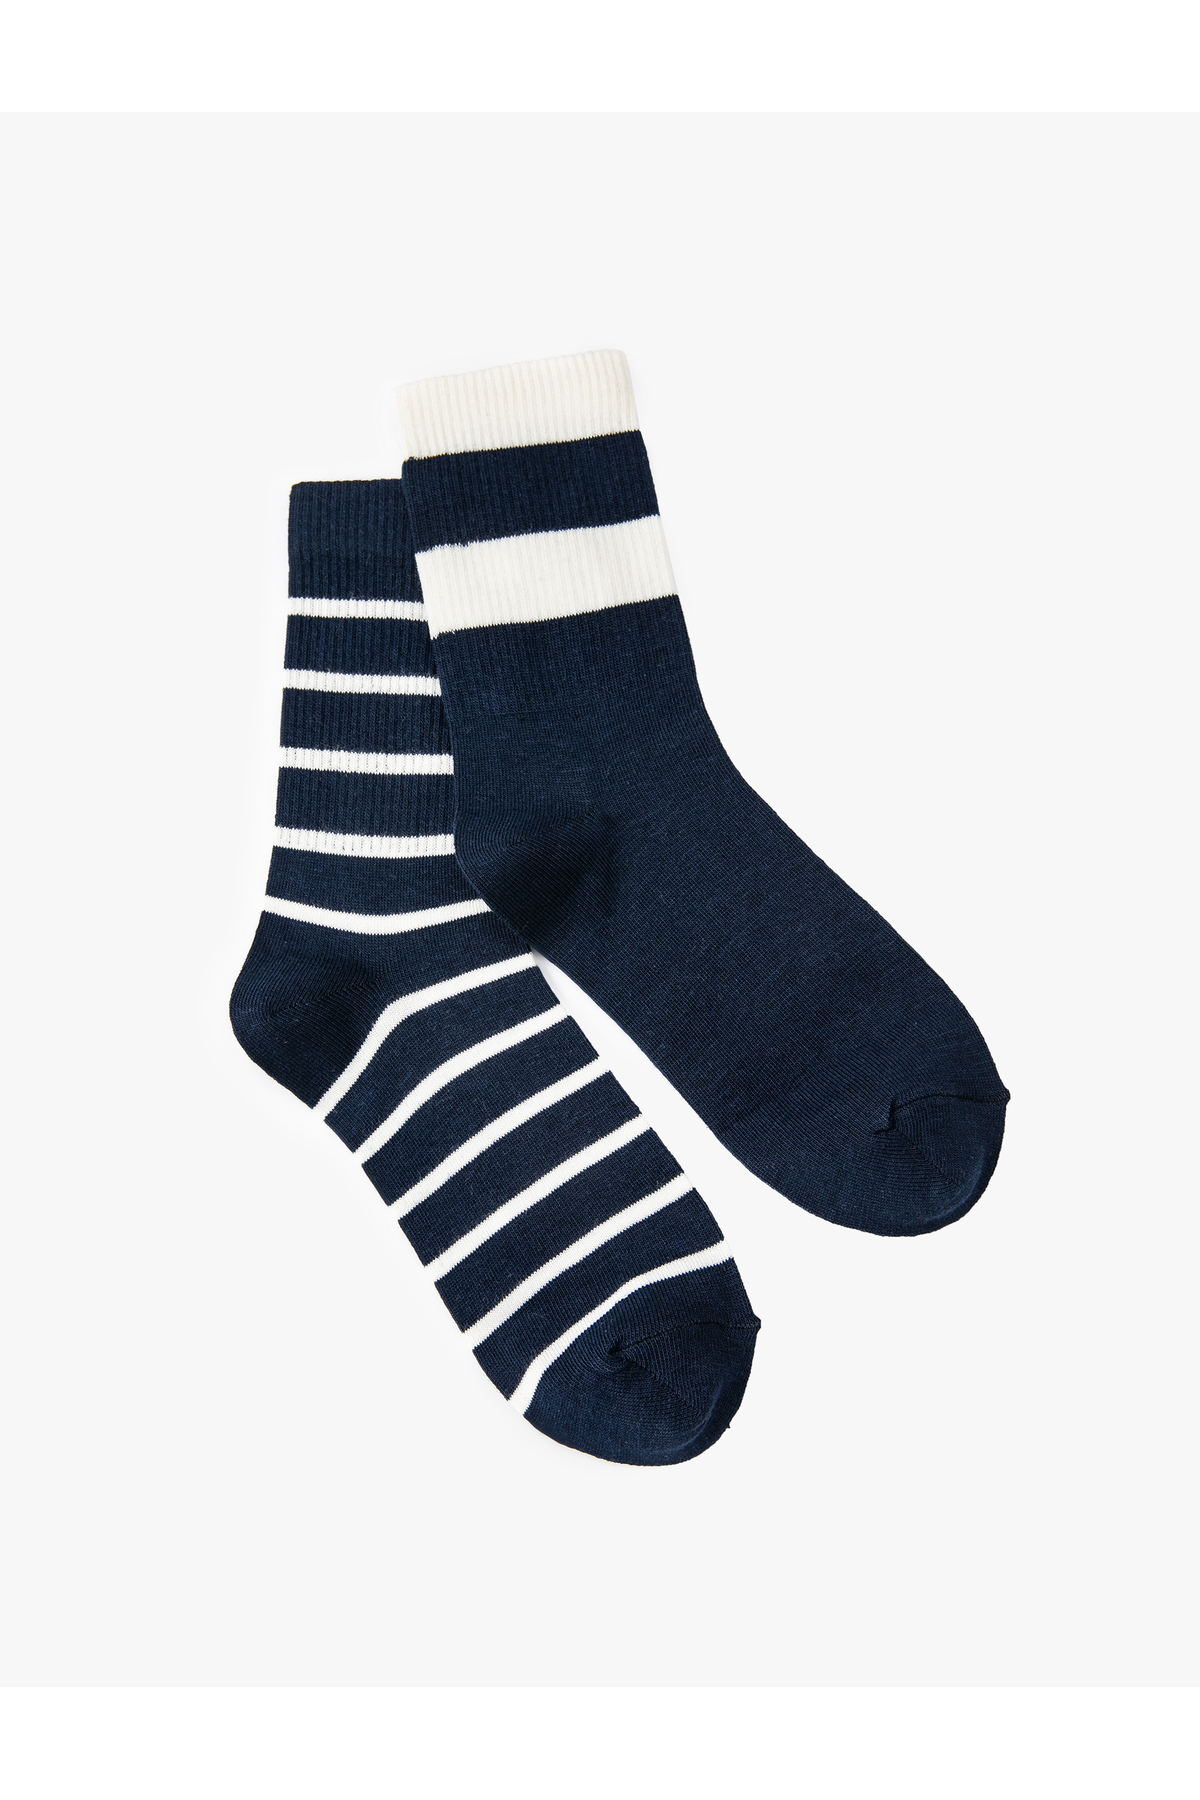 Levně Koton Set of 2 Striped Socks